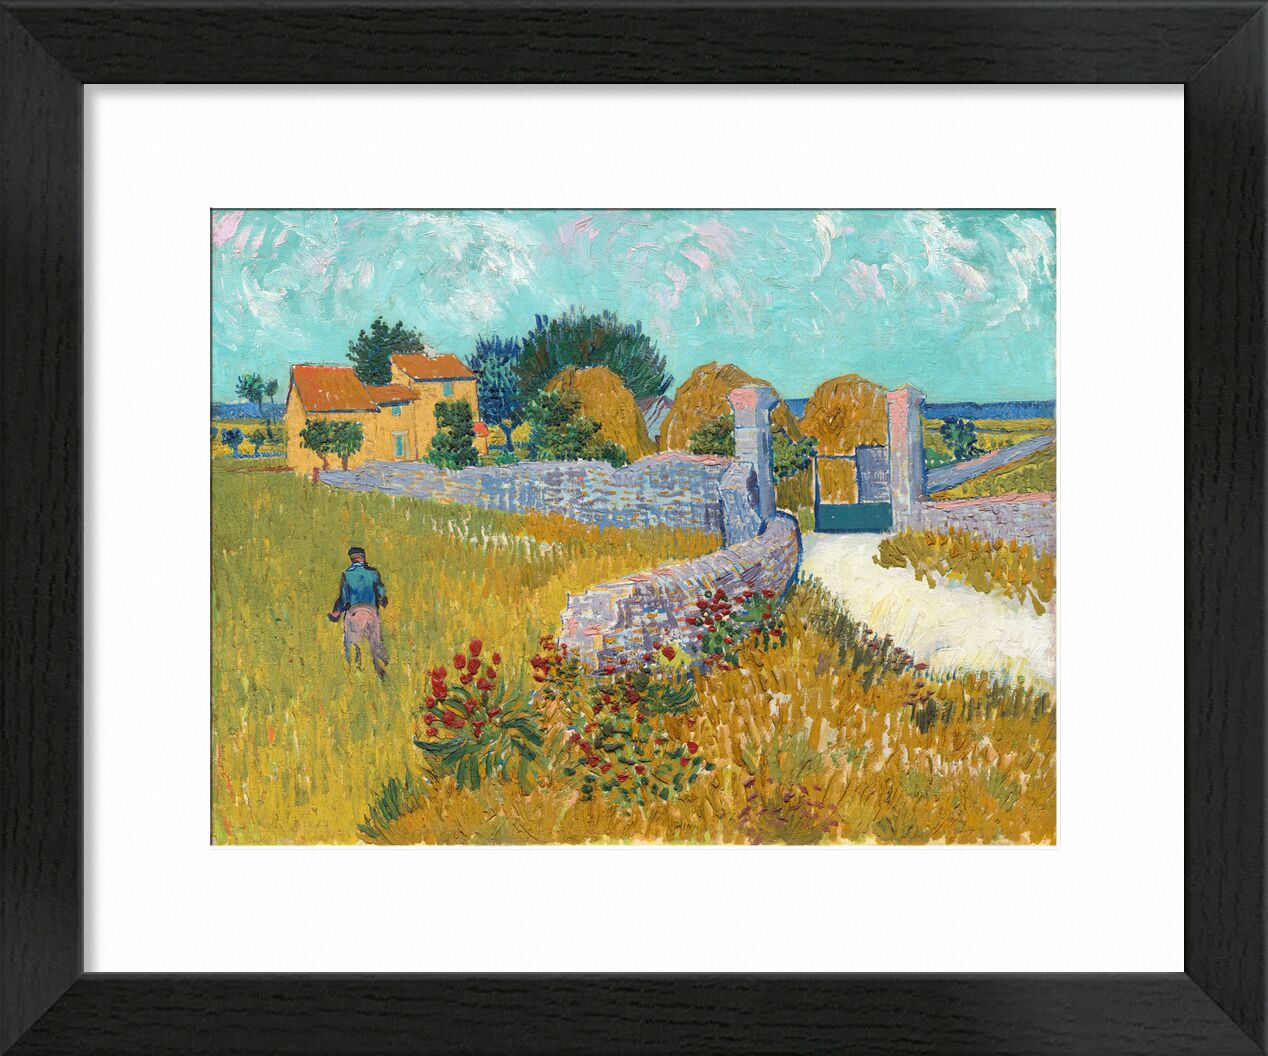 Bauernhof in der Provence - Vincent van Gogh von Bildende Kunst, Prodi Art, Himmel, Haus, Natur, provence, Landschaft, Bauernhof, VINCENT VAN GOGH, Van gogh